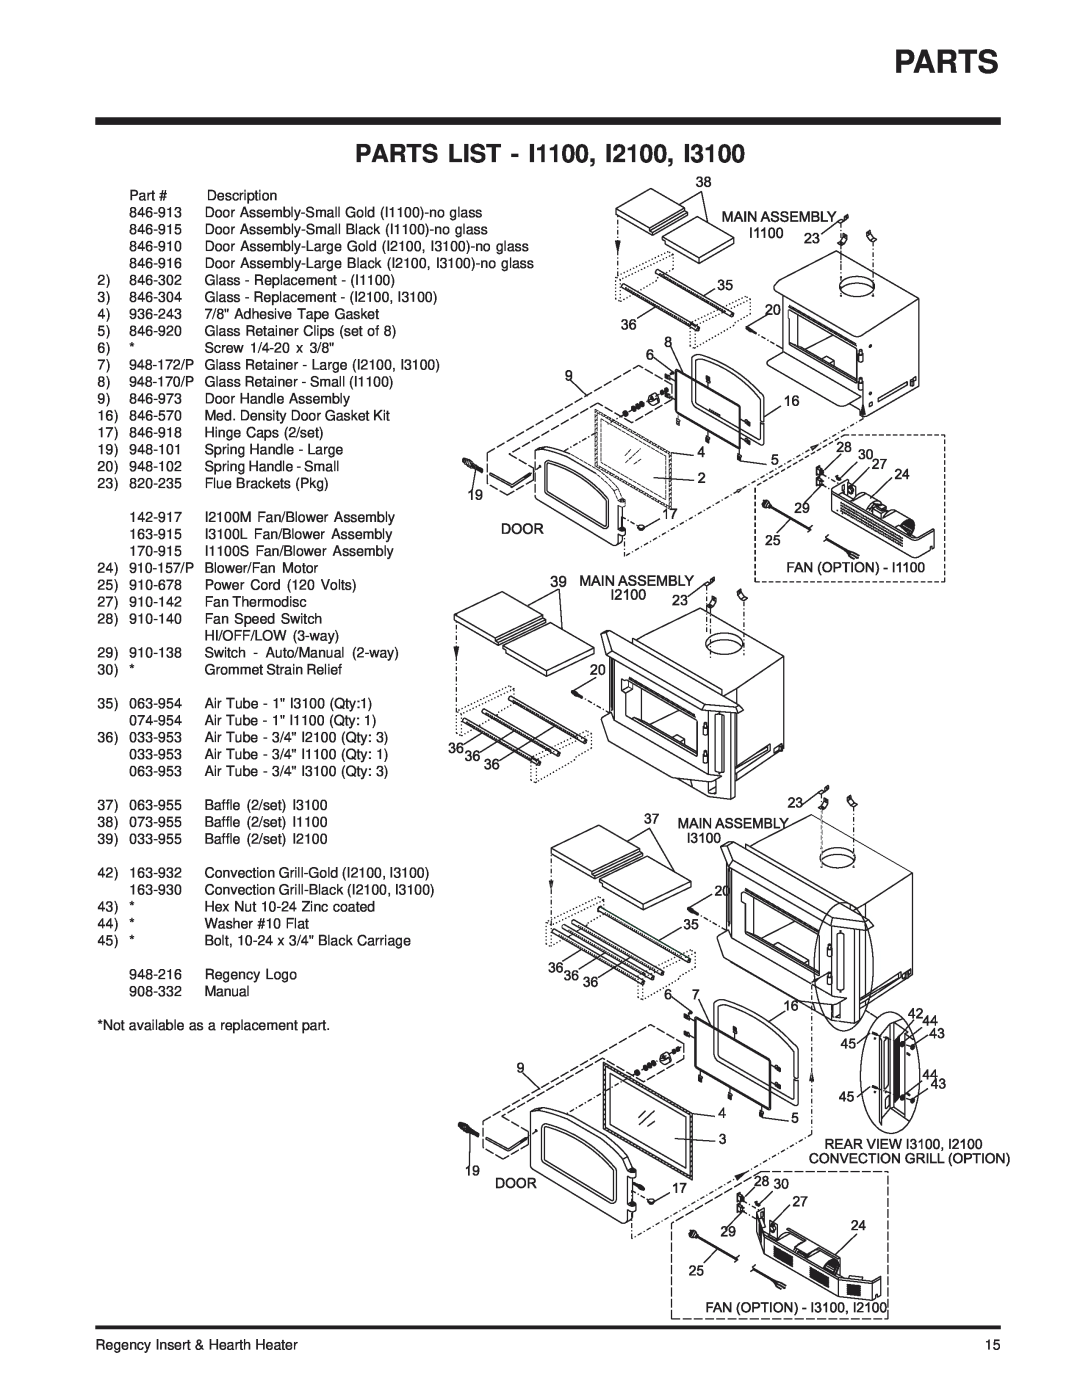 Regency I2100M installation manual Parts List 